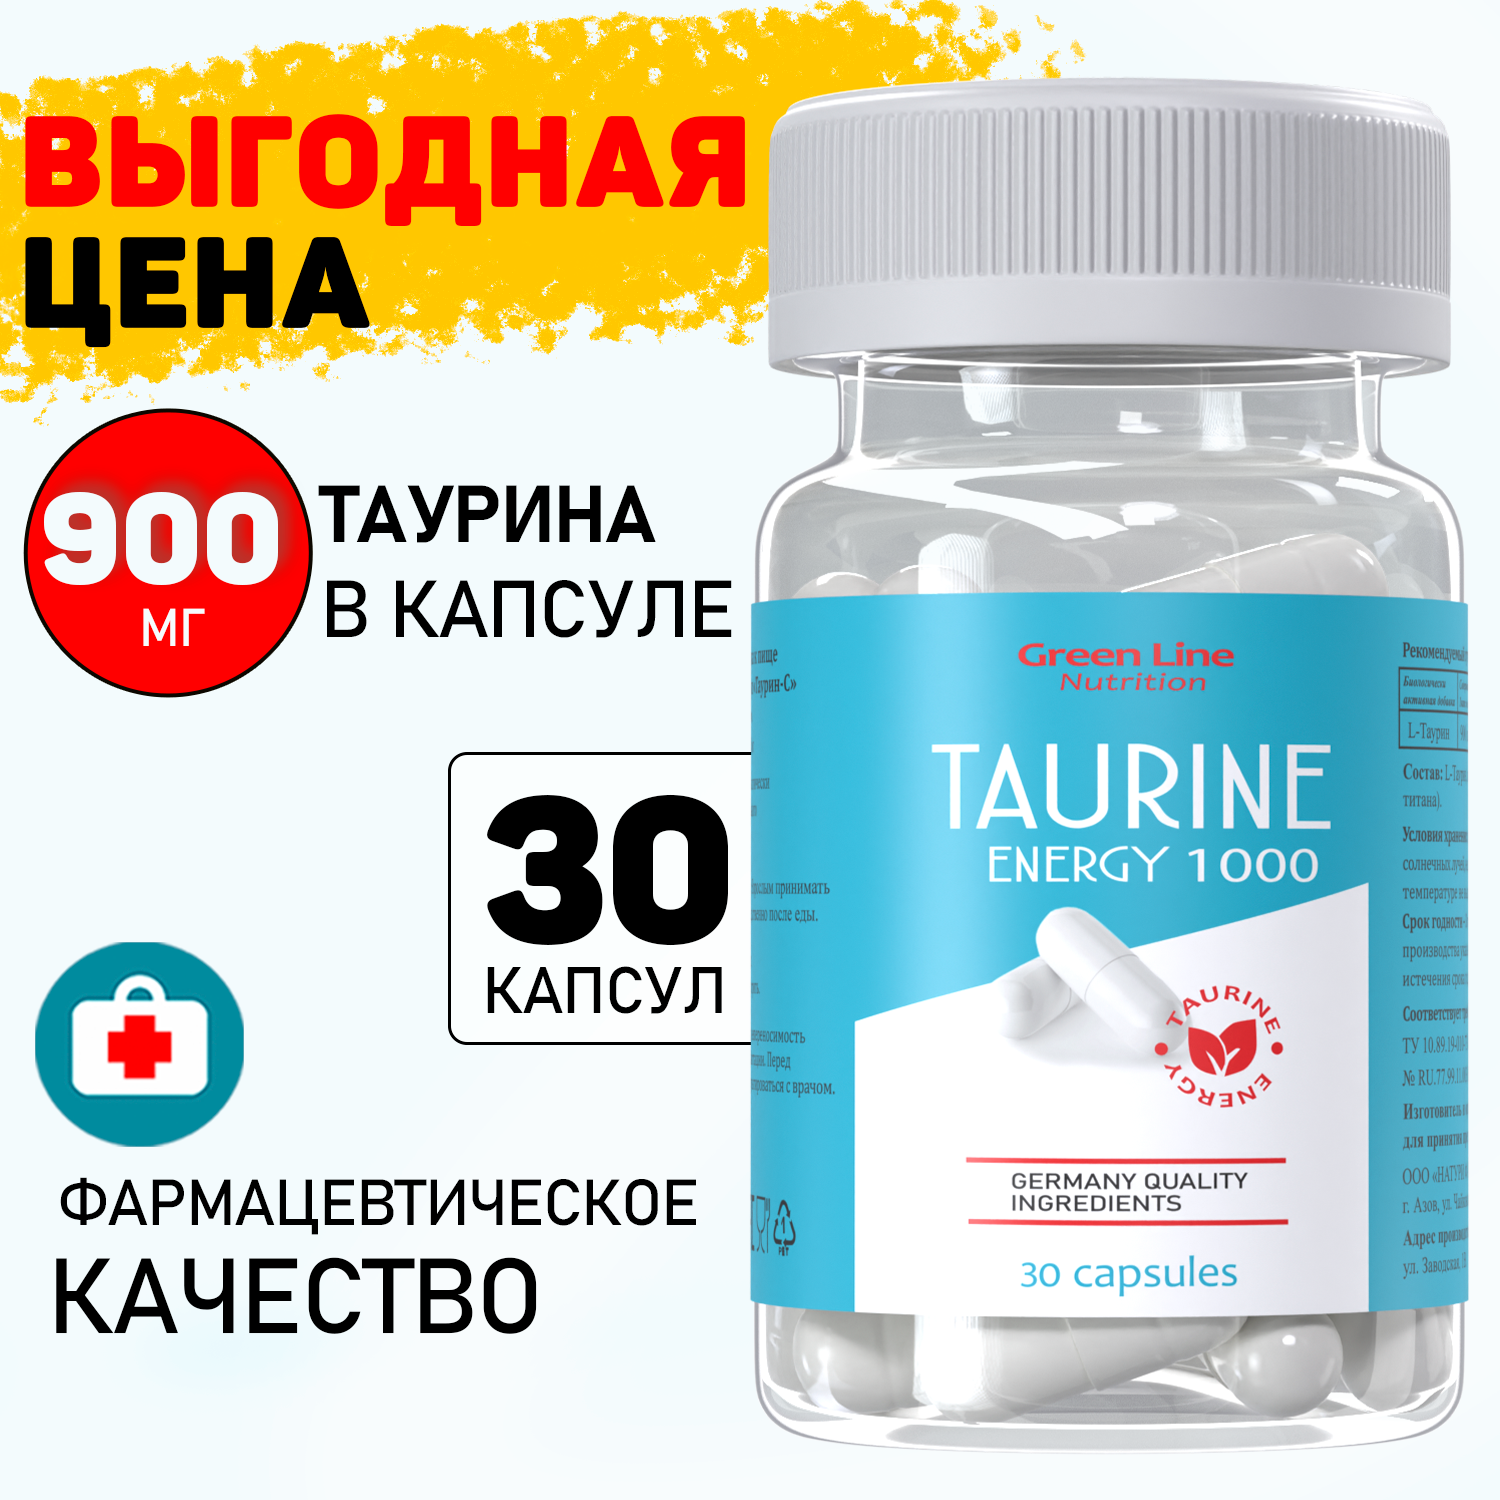 Таурин в капсулах Taurine Energy 1000 30 капсул аминокислота для повышения энергии и выносливости Green Line Nutrition